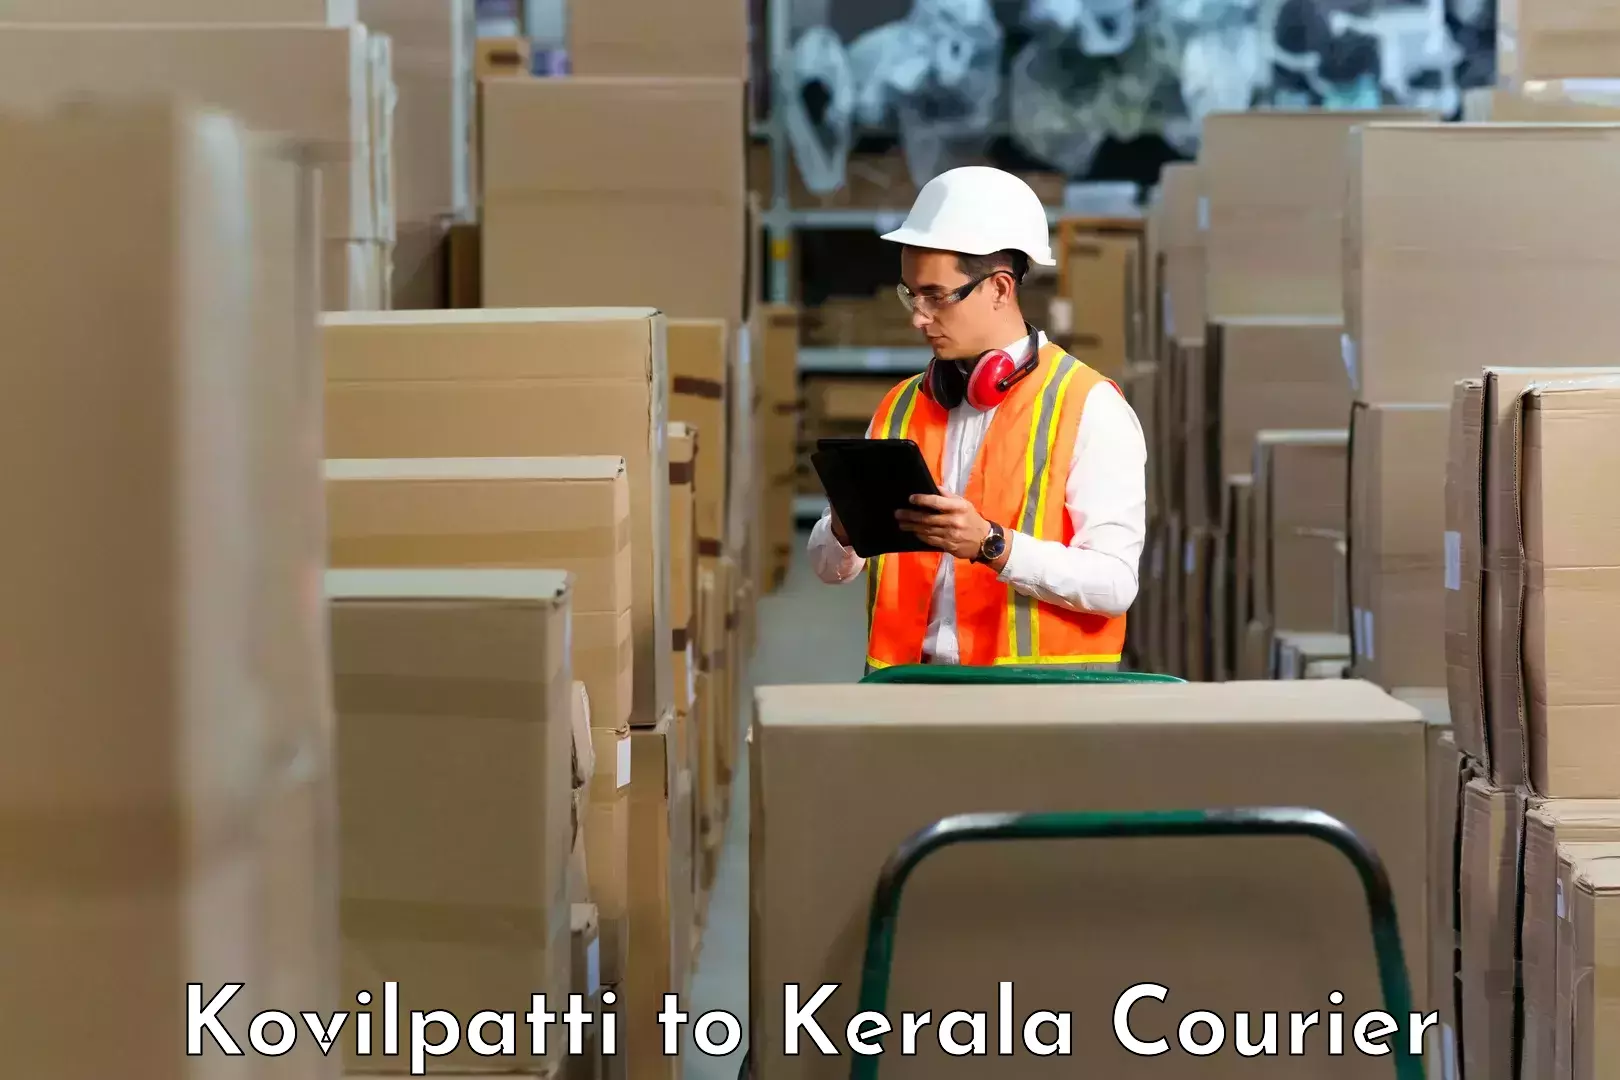 Business delivery service Kovilpatti to Tiruvalla